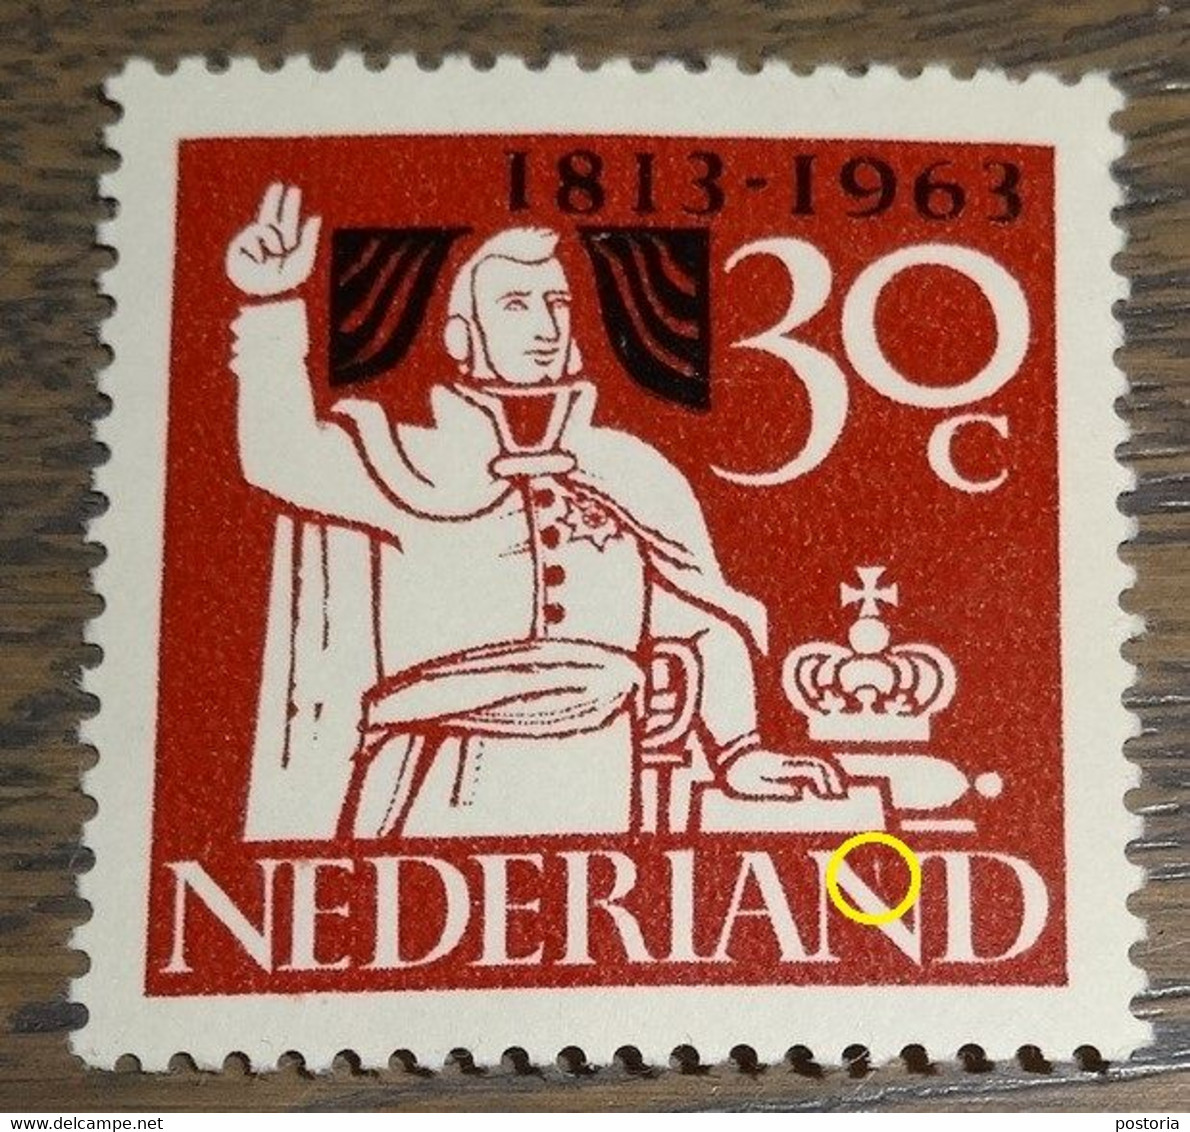 Nederland - MAST - 810 PM - 1963 - Plaatfout - Postfris - Wit Streepje In 2e N Van NEDERLAND - Variedades Y Curiosidades